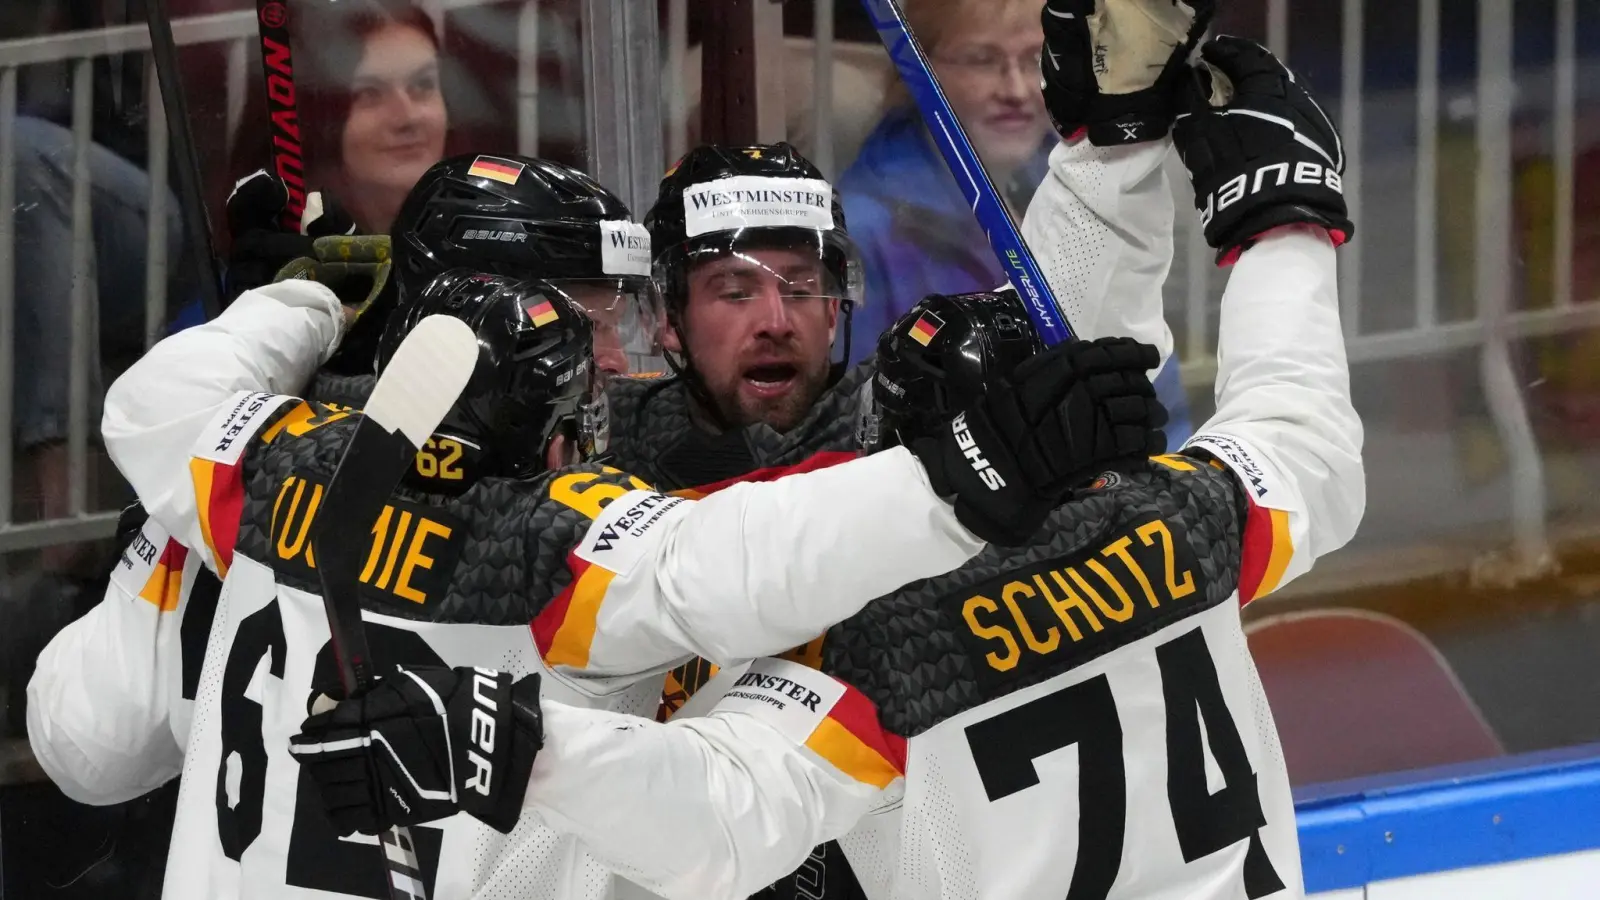 Deutschland richtet die Eishockey-Weltmeisterschaft 2027 aus. (Foto: Roman Koksarov/AP/dpa)